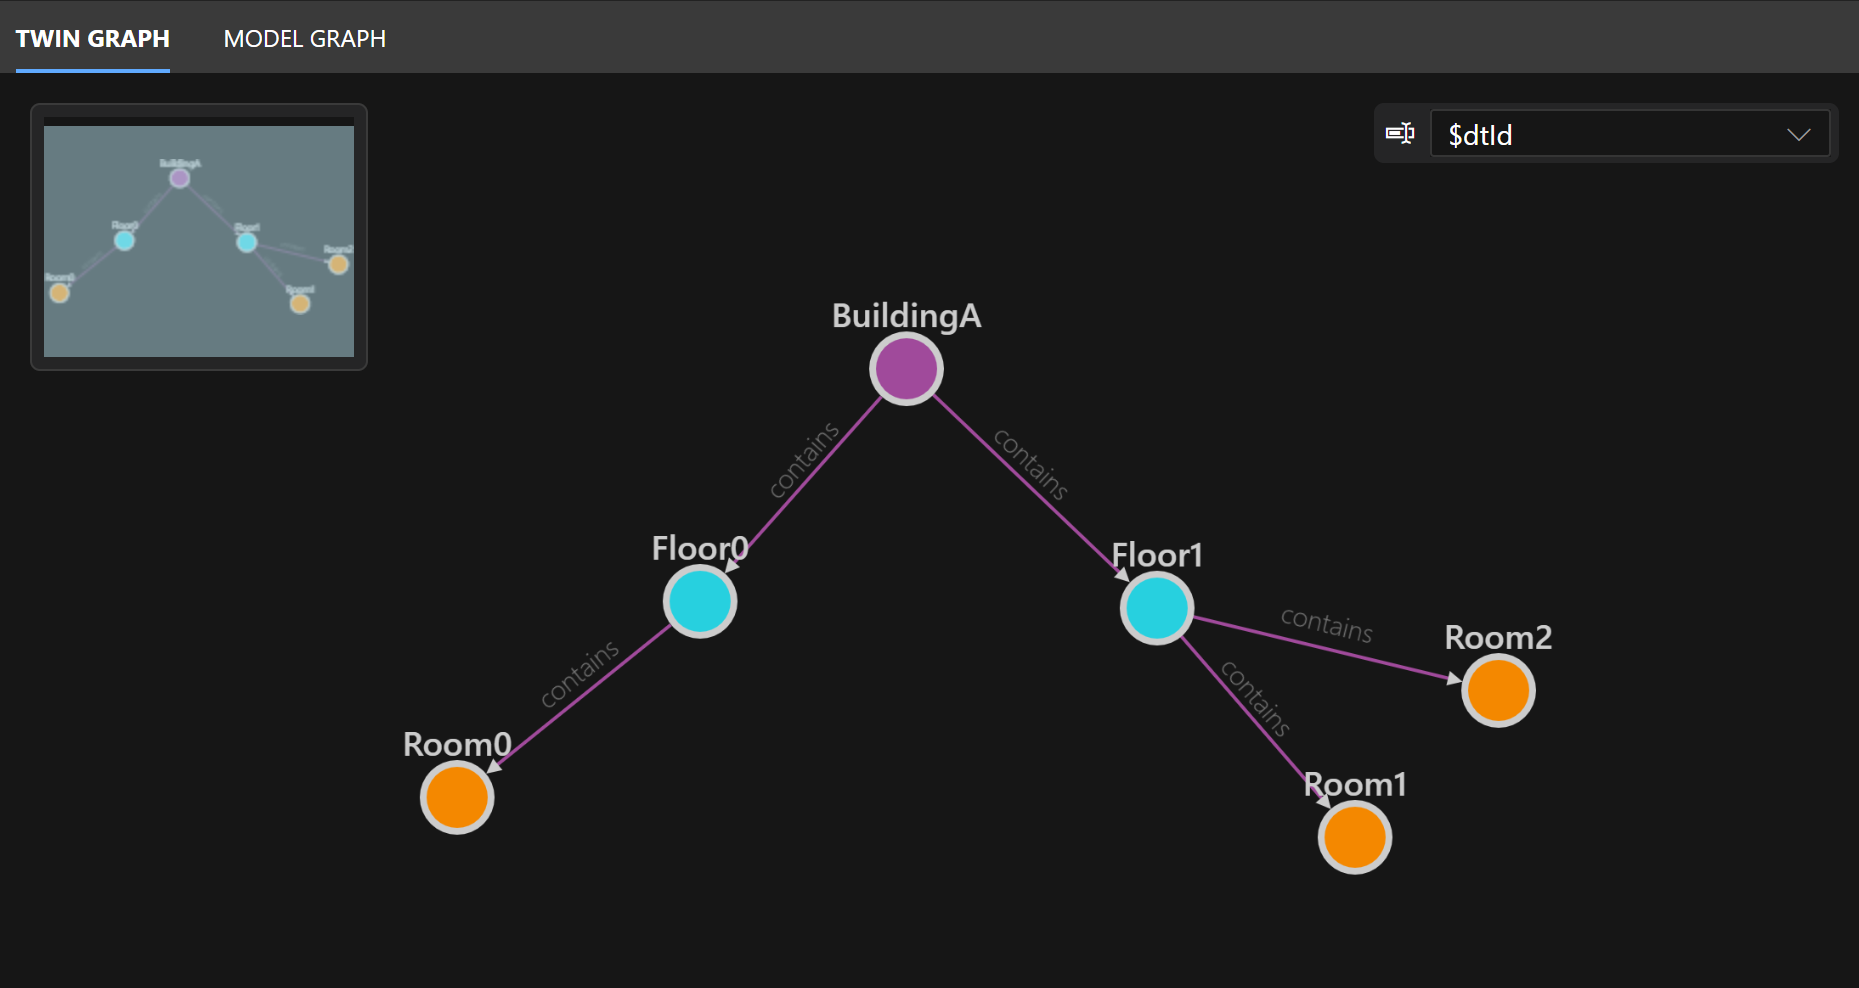 Снимок экрана: граф из четырех круглых узлов, соединенных стрелками, в Azure Digital Twins Explorer